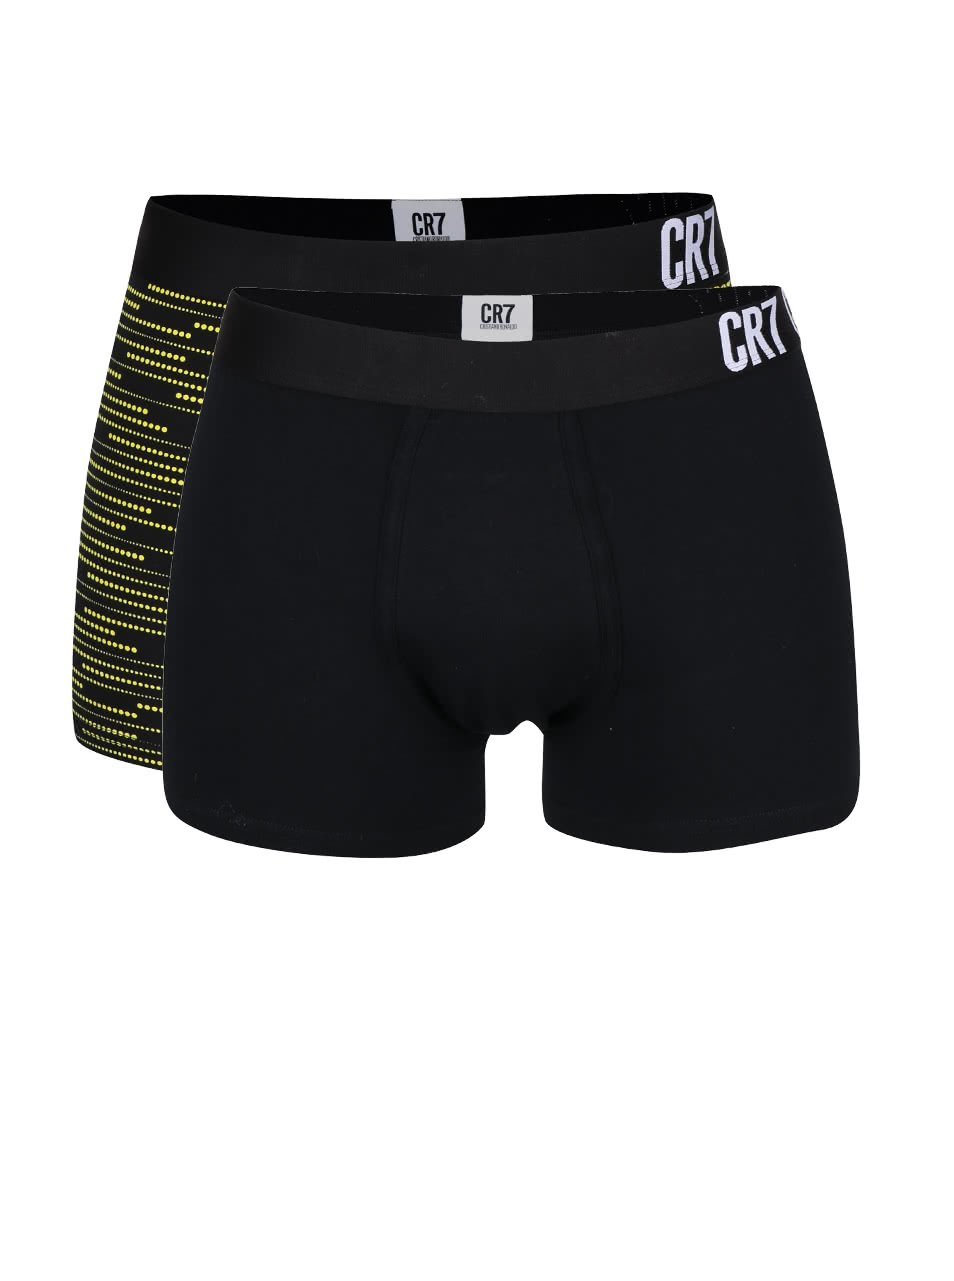 Sada dvou boxerek v černé a barevné kombinaci CR7